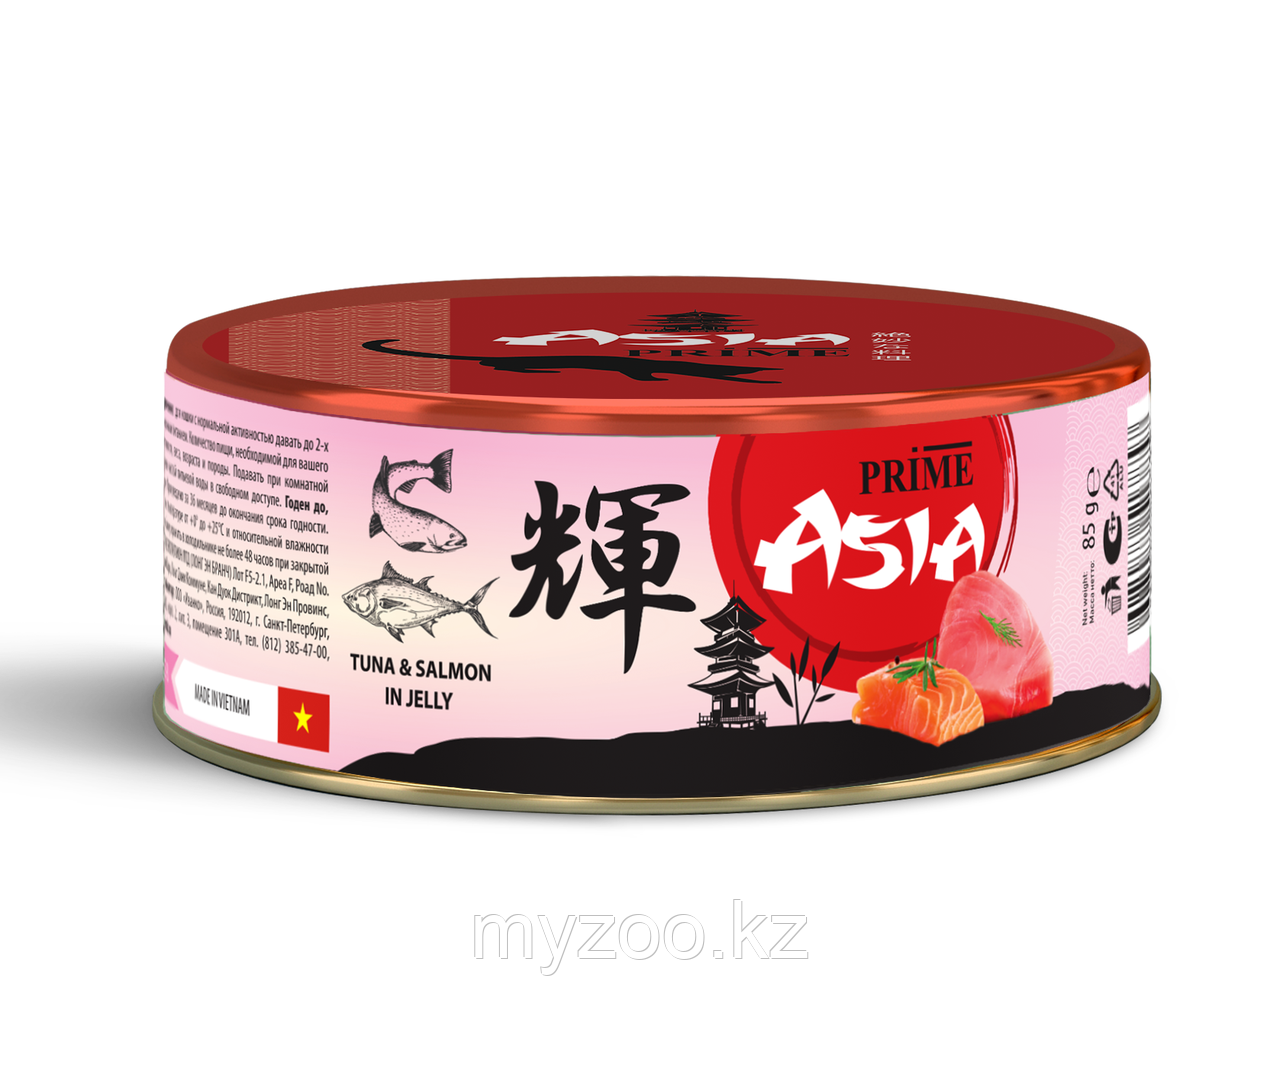 Prime Asia консервы для кошек тунец с лососем в желе, 85гр